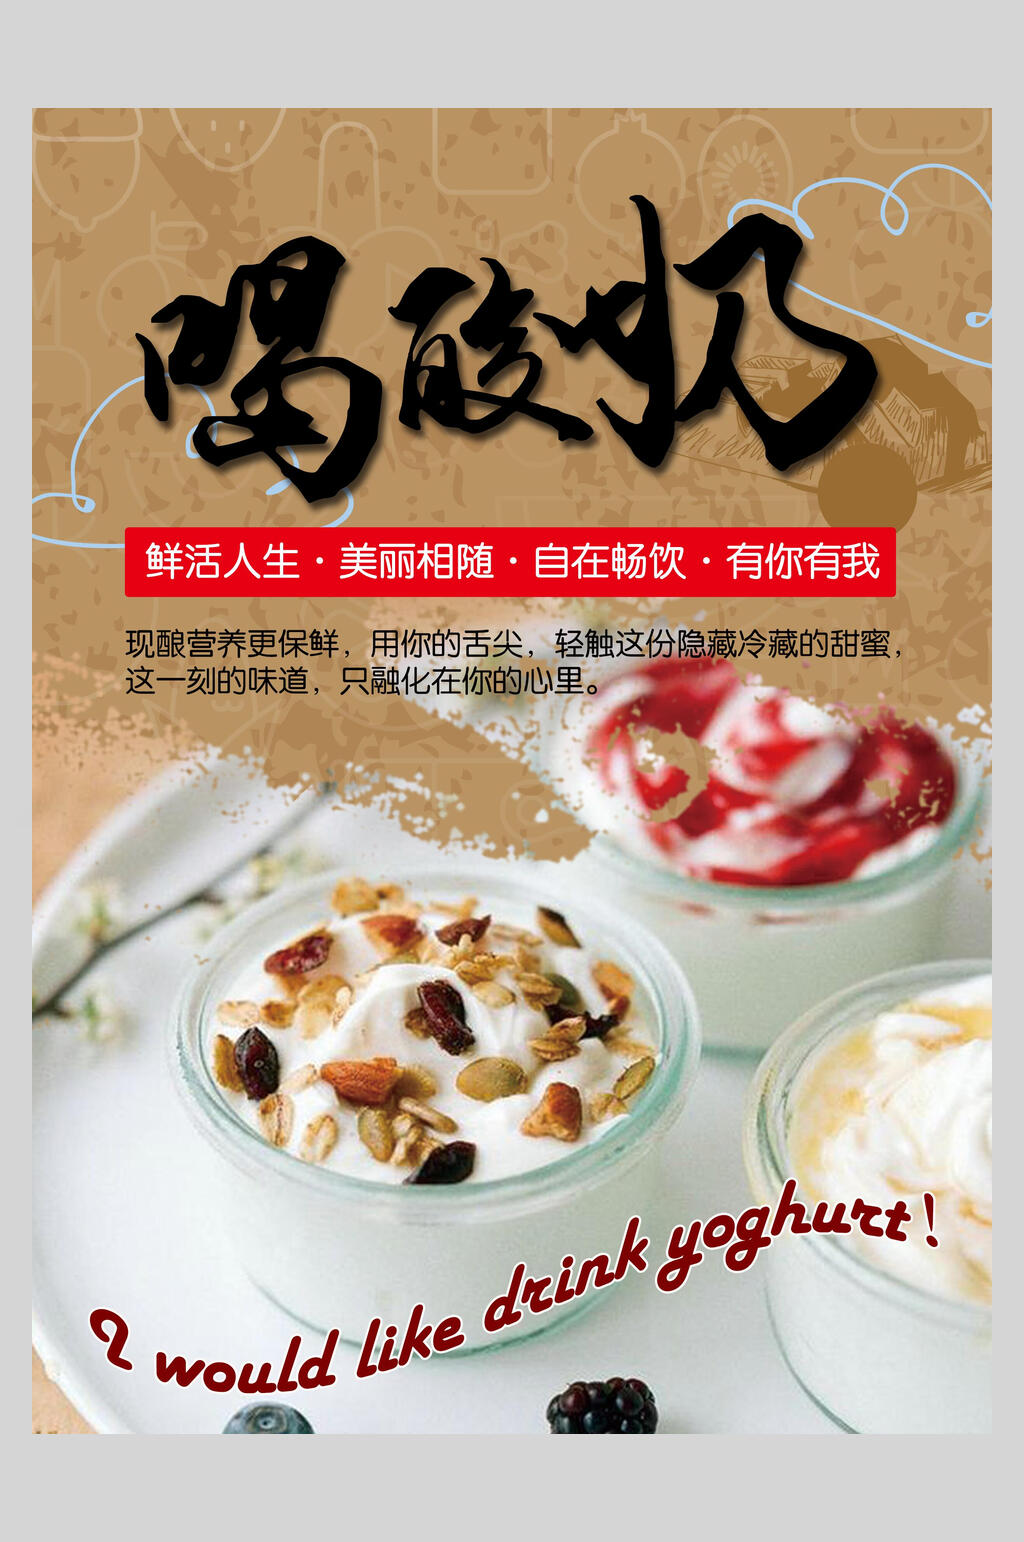 美味炒酸奶海报素材免费下载,本作品是由你好上传的原创平面广告素材